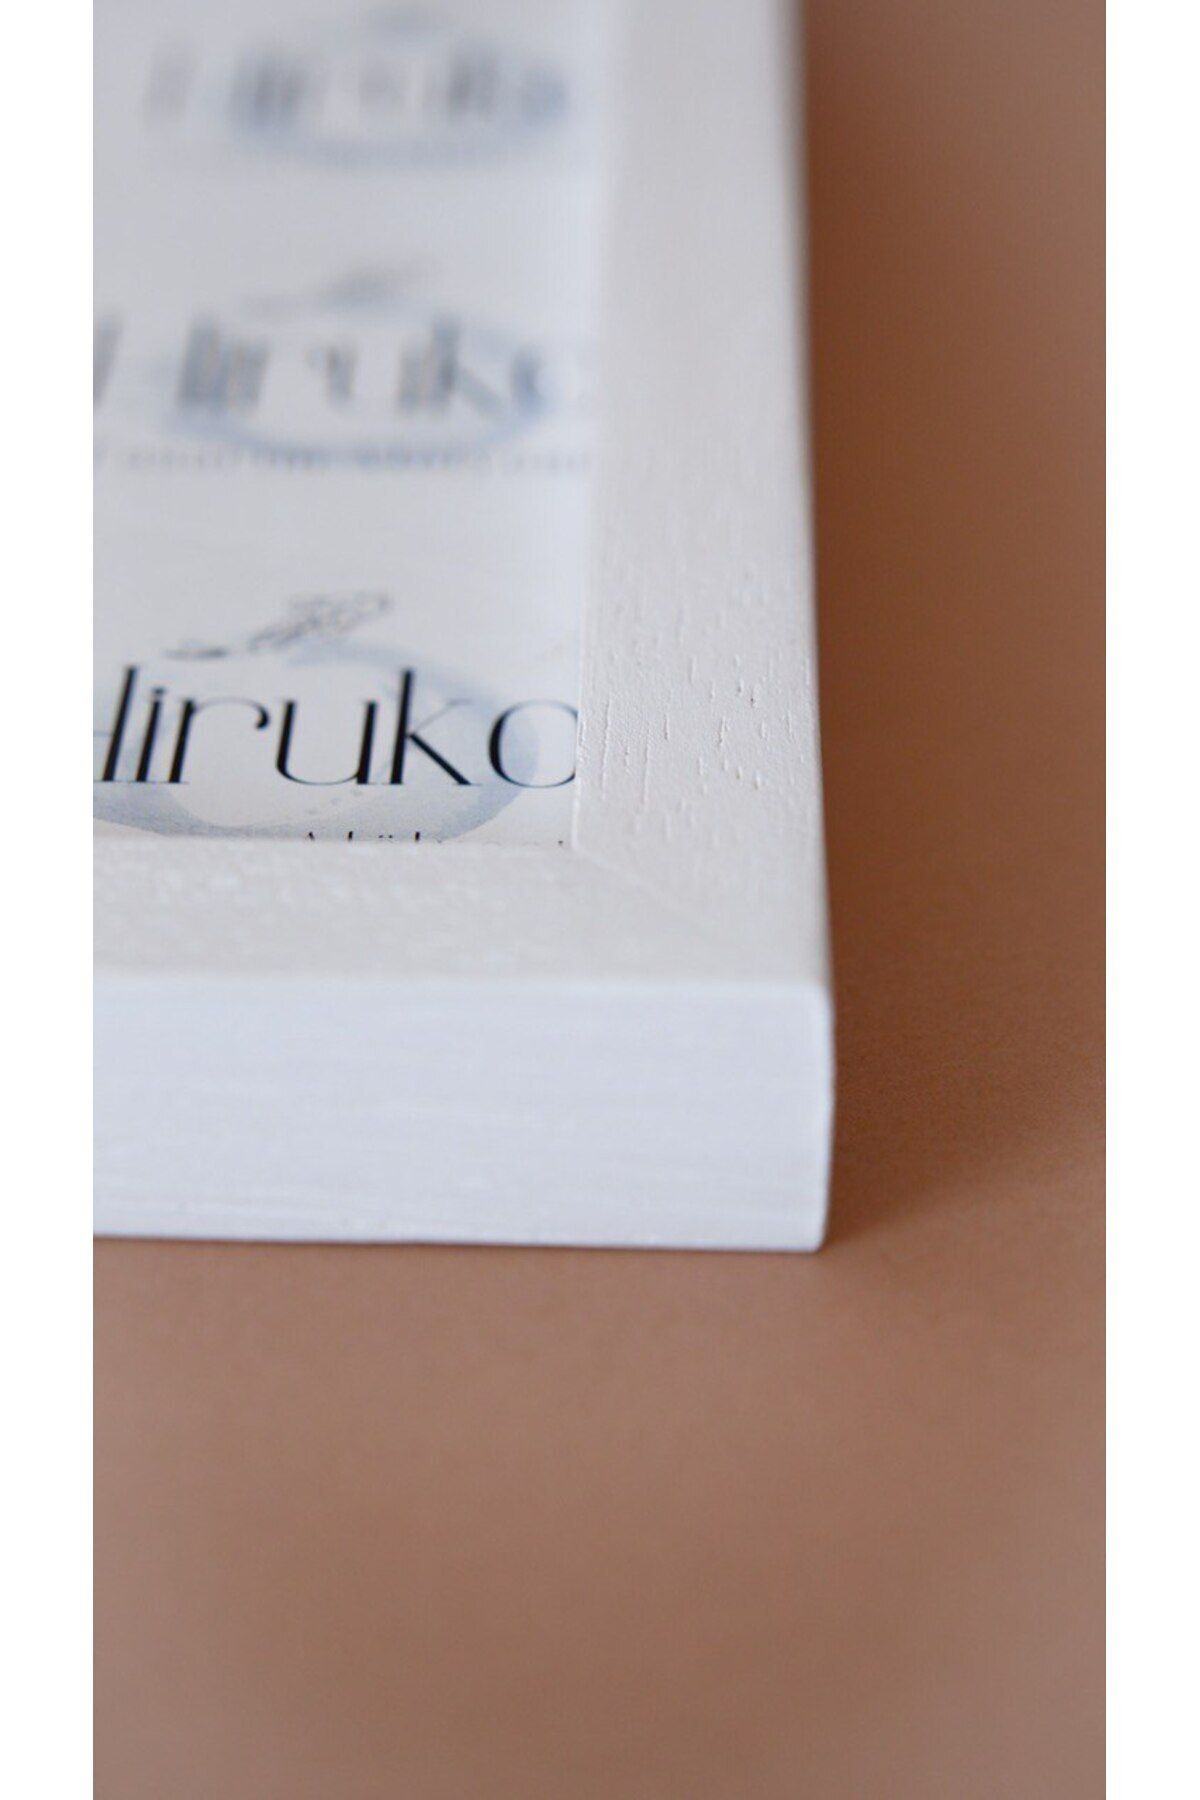 Hiruko Tasarım Atölyesi Ahşap Çerçeve Iç Ölçü 30x42 Cm (A3) Premium Frame Siyah & Beyaz & Ahşap Fotoğraf Çerçevesi